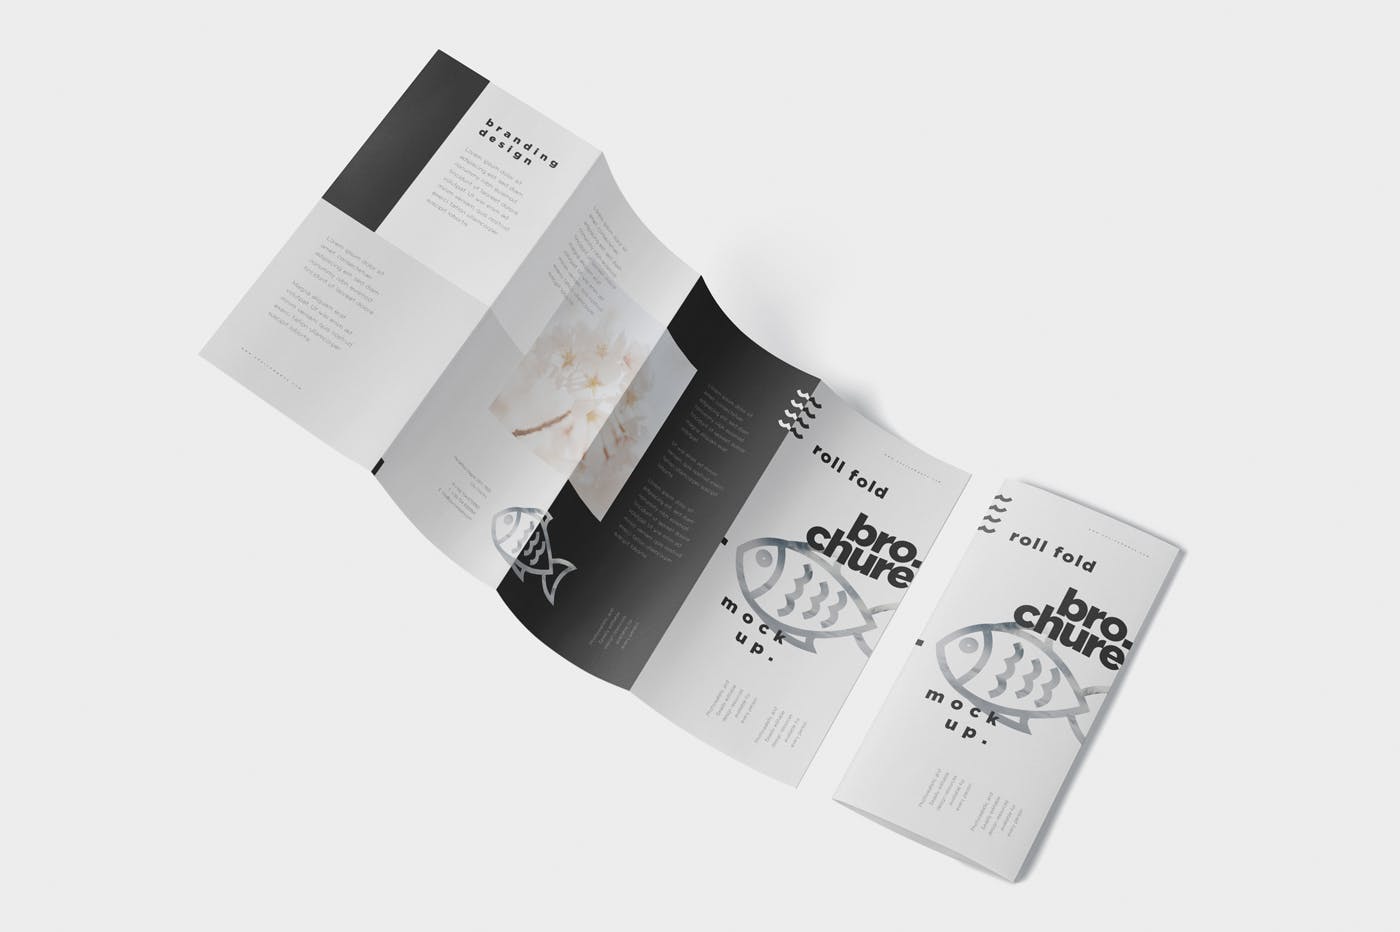 折叠设计风格企业传单/宣传册设计样机素材库精选 Roll-Fold Brochure Mockup – DL DIN Lang Size插图(4)